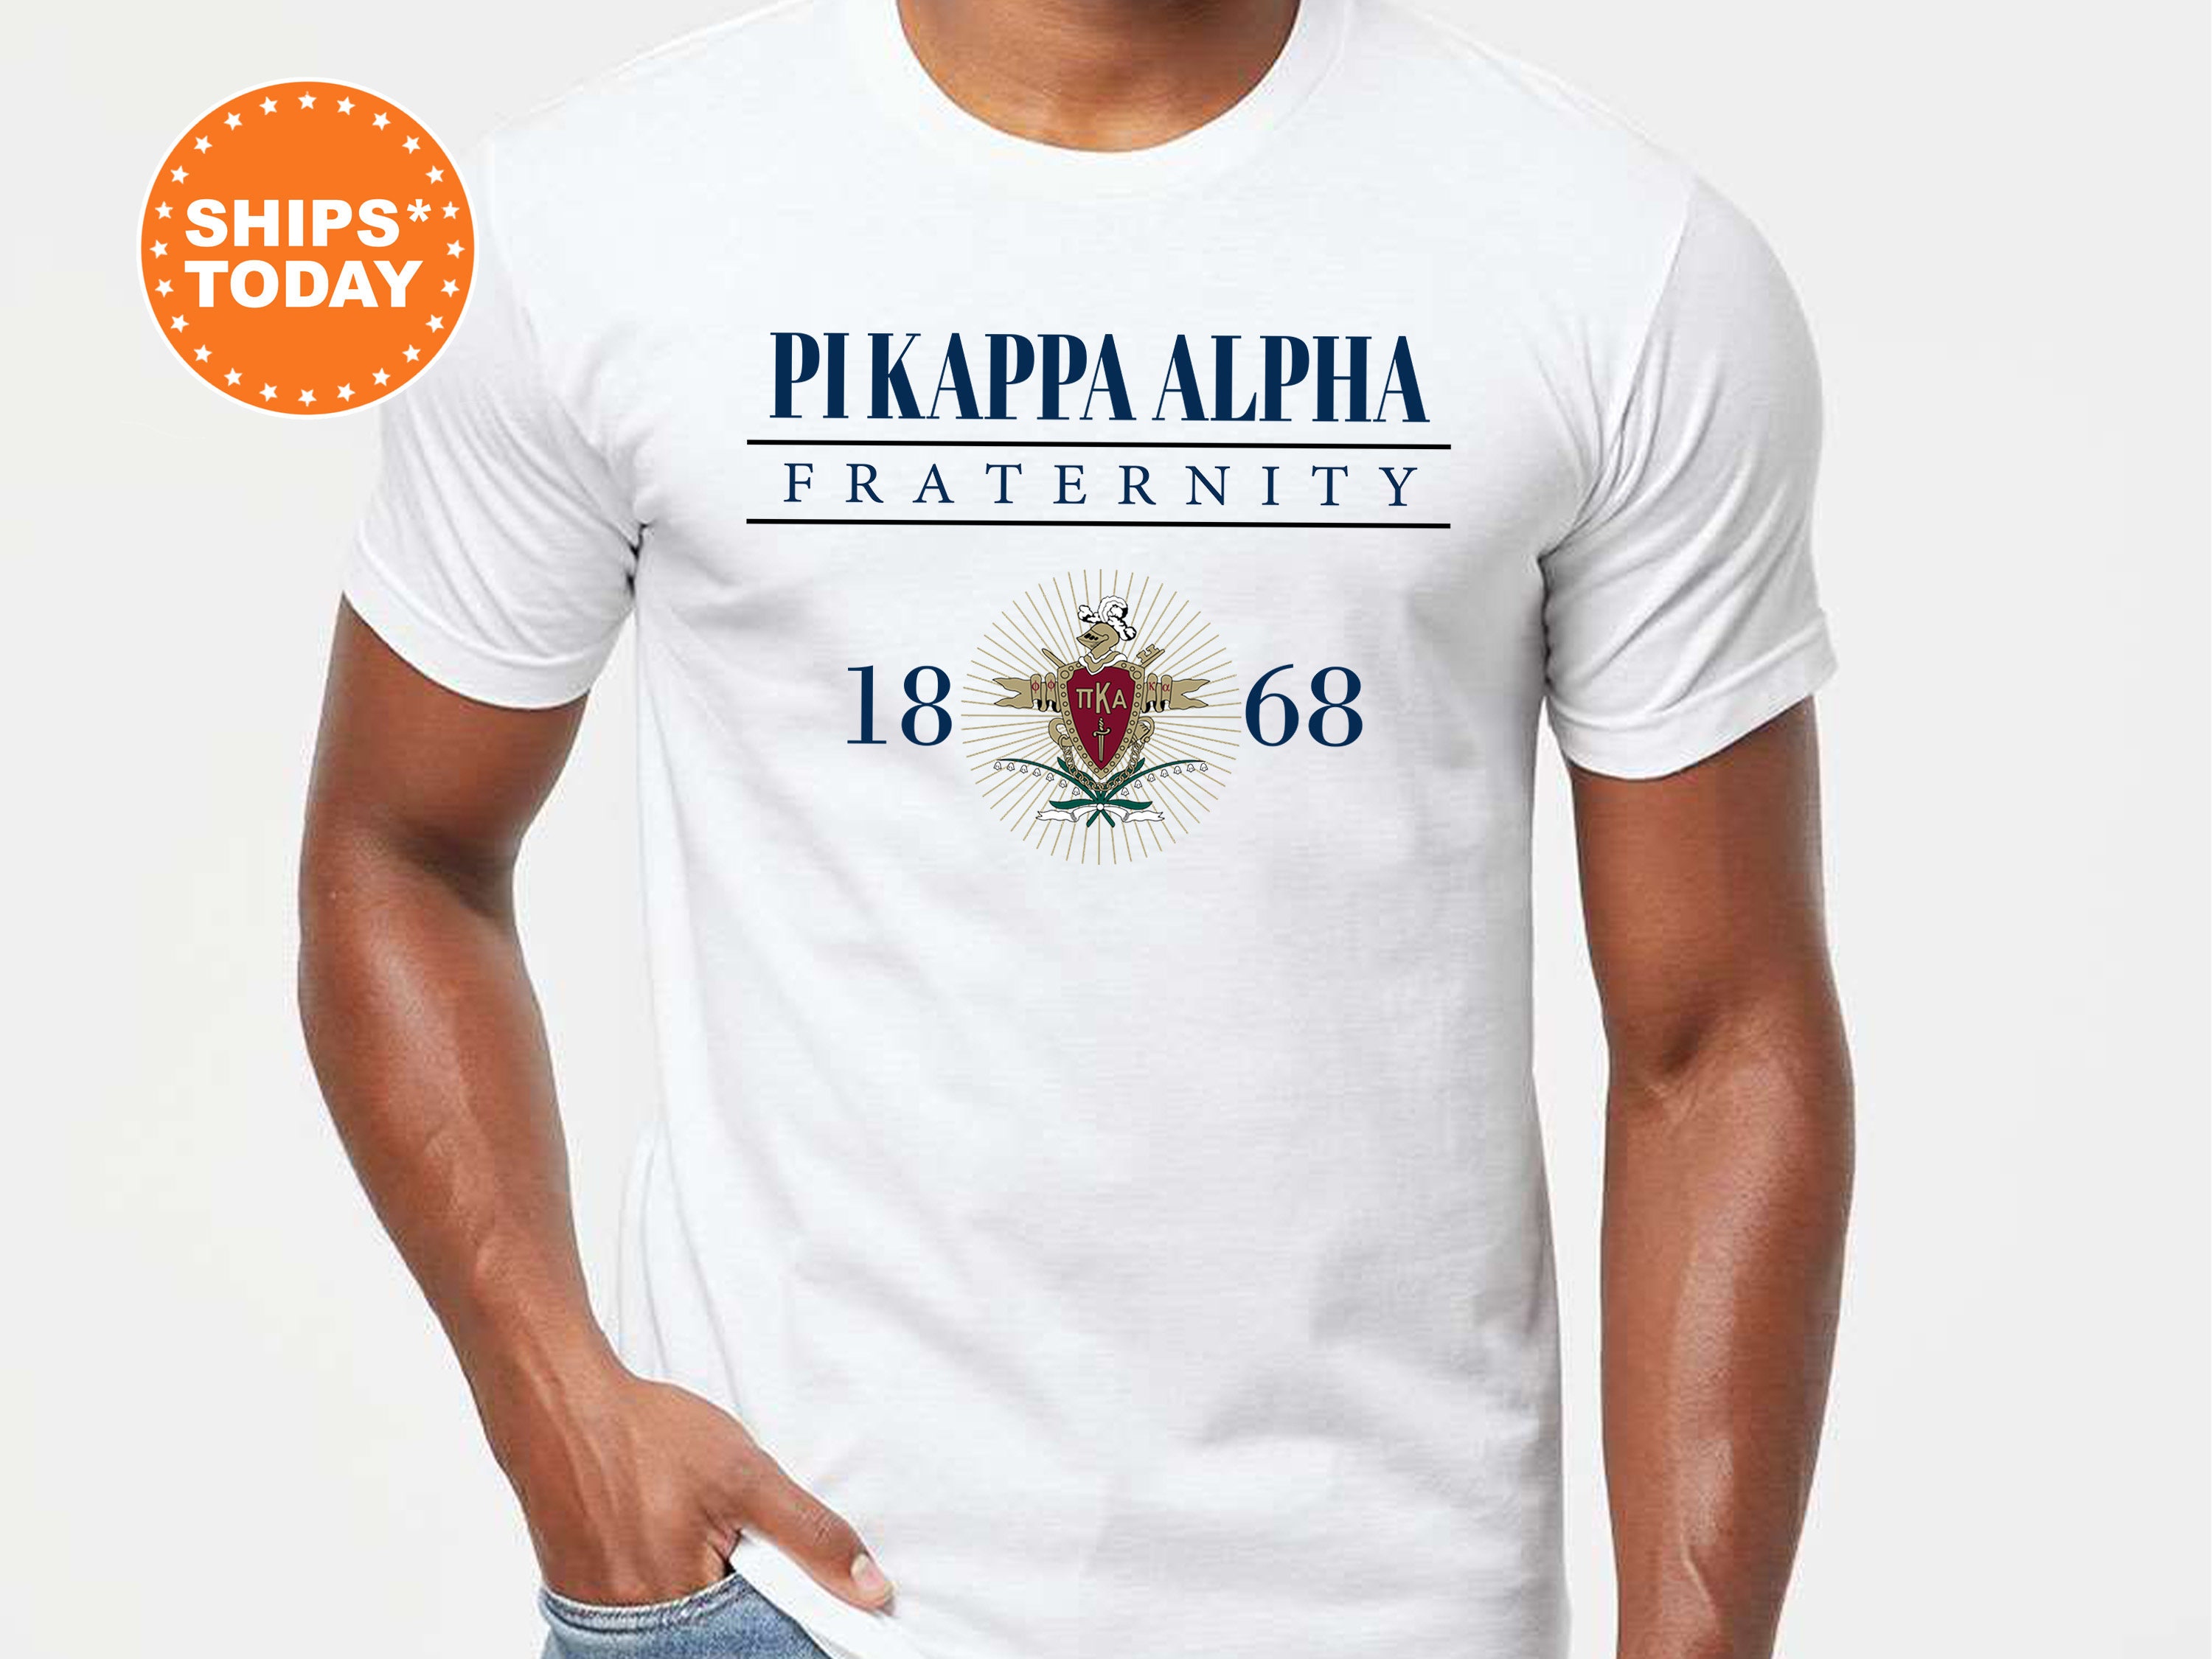 galerij storting Frank Pi Kappa Alpha Large Crest Fraternity T-Shirt PIKE - Etsy België